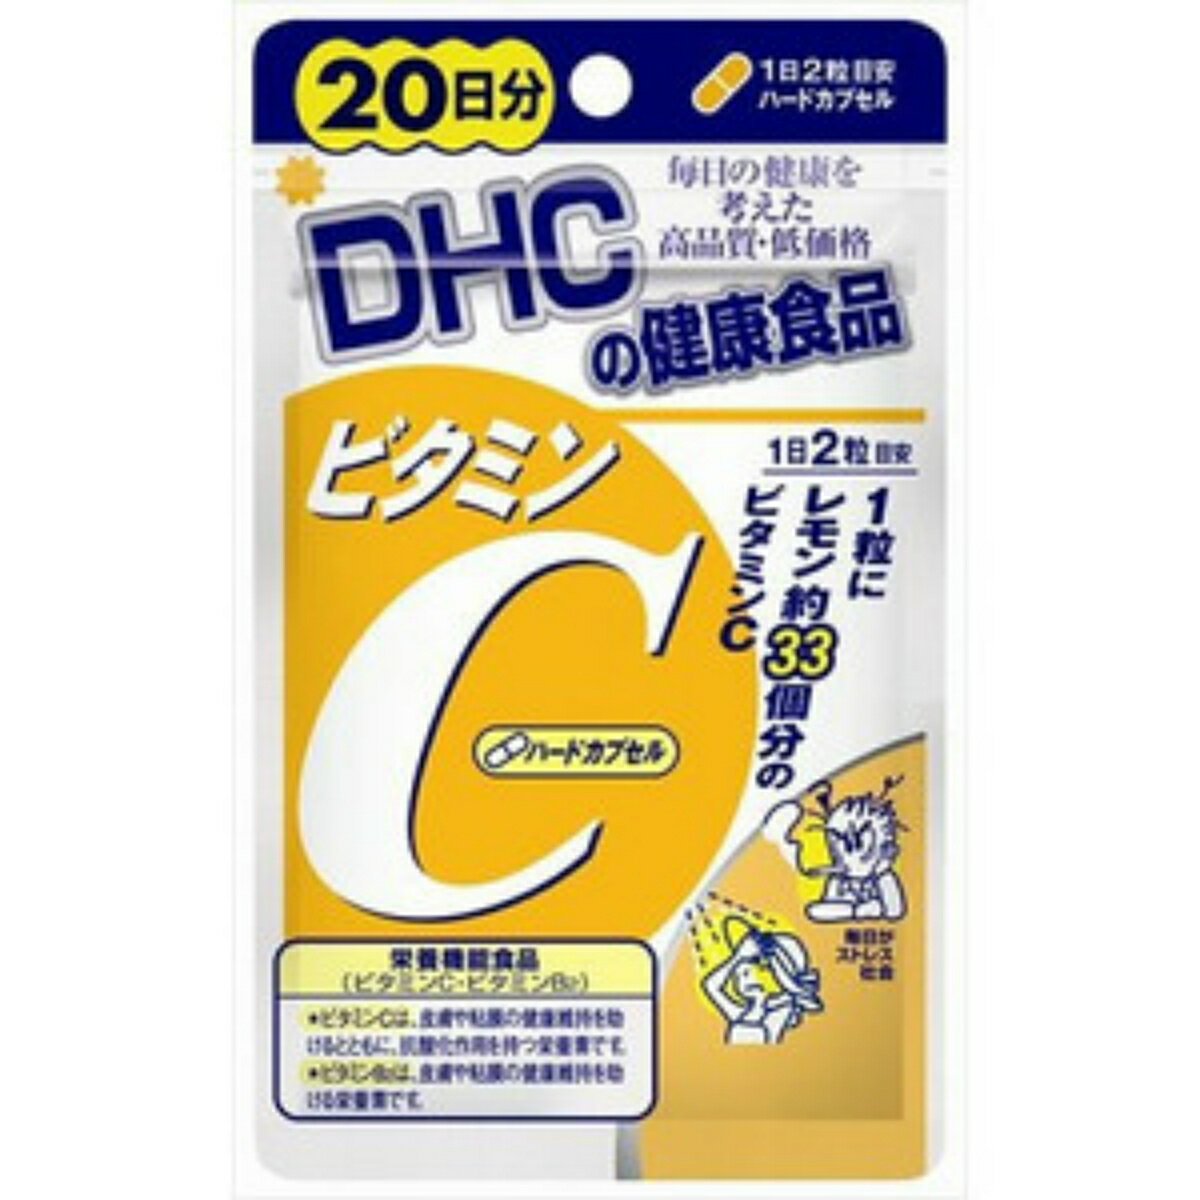 商品名：DHC ビタミンC 20日分 40粒入 ハードカプセルサプリメント内容量：40粒入JANコード：4511413404058発売元、製造元、輸入元又は販売元：DHC原産国：日本区分：栄養機能食品商品番号：101-r001-4511413404058ブランド：DHCビタミンCにその働きを助けるビタミンB2をプラスしたサプリメントです。　朝と夜など、2回に分けてとるのがおすすめです。広告文責：アットライフ株式会社TEL 050-3196-1510 ※商品パッケージは変更の場合あり。メーカー欠品または完売の際、キャンセルをお願いすることがあります。ご了承ください。